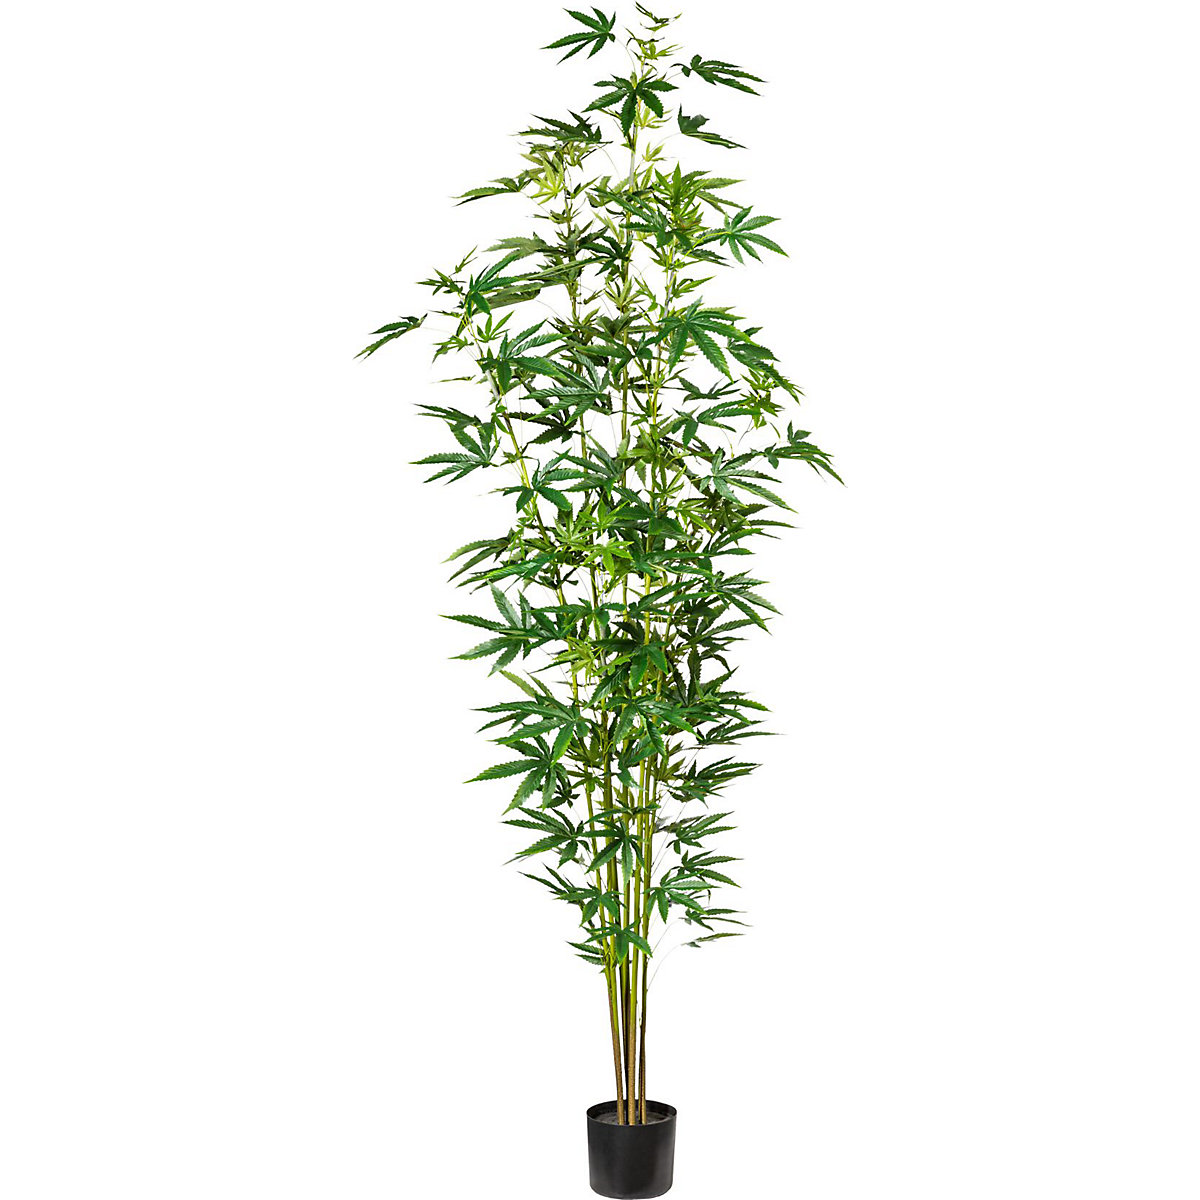 Planta de cânhamo ornamental, em vaso de plástico, altura aprox. 2100 mm